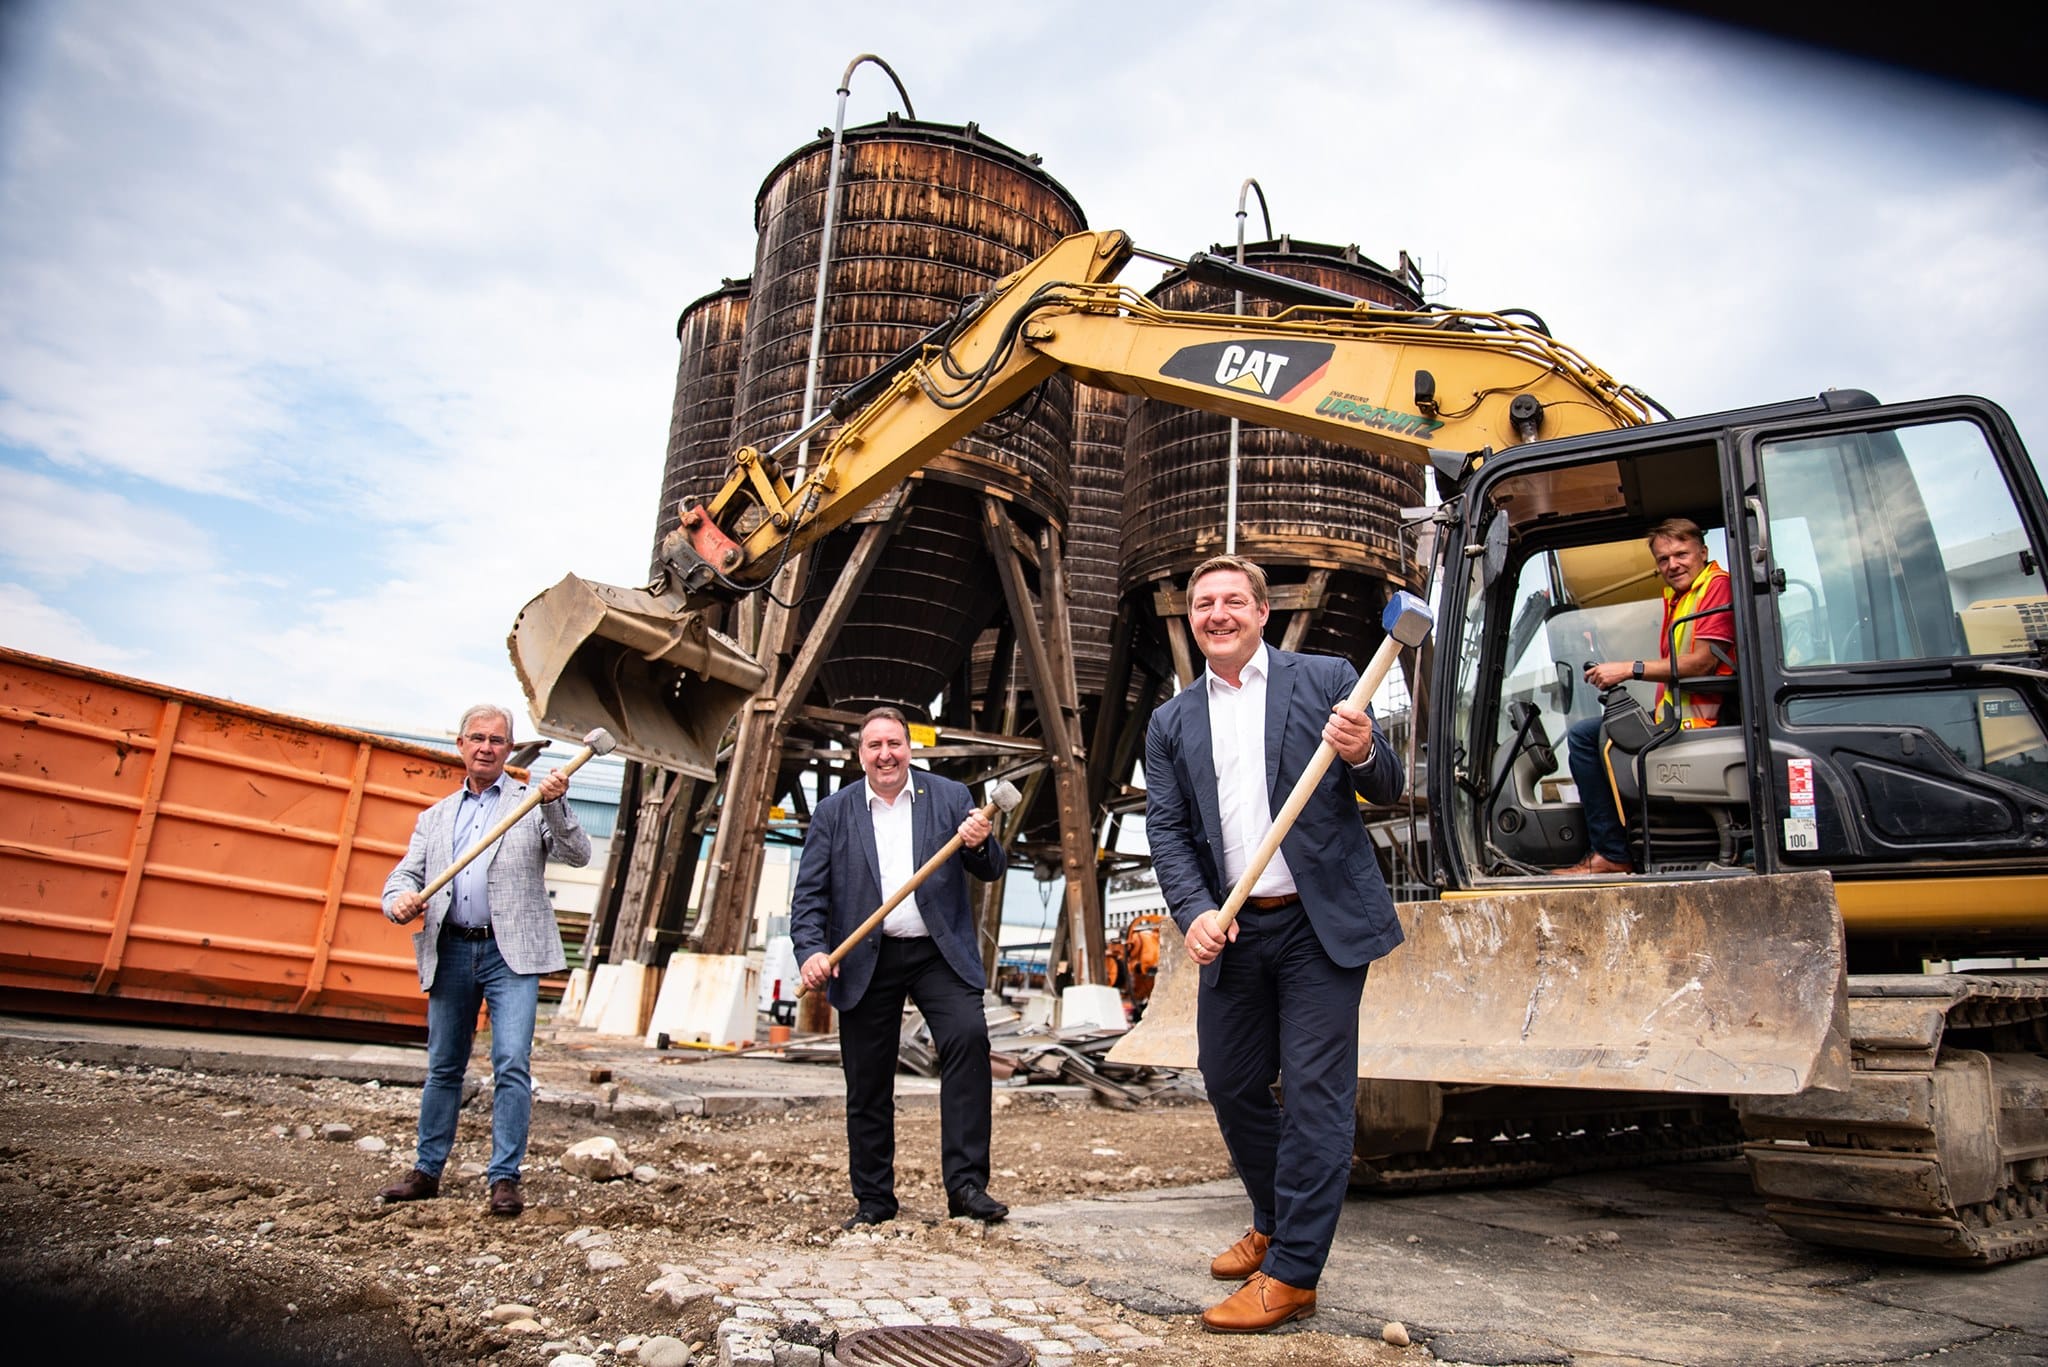 Die Bauarbeiten für die neue Eishalle in Villach haben angefangen. Am Bild v.l.: Stadtrat Harald Sobe (SPÖ), Stadtrat Erwin Baumann (FPÖ) und Bürgermeister Günther Albel (SPÖ).